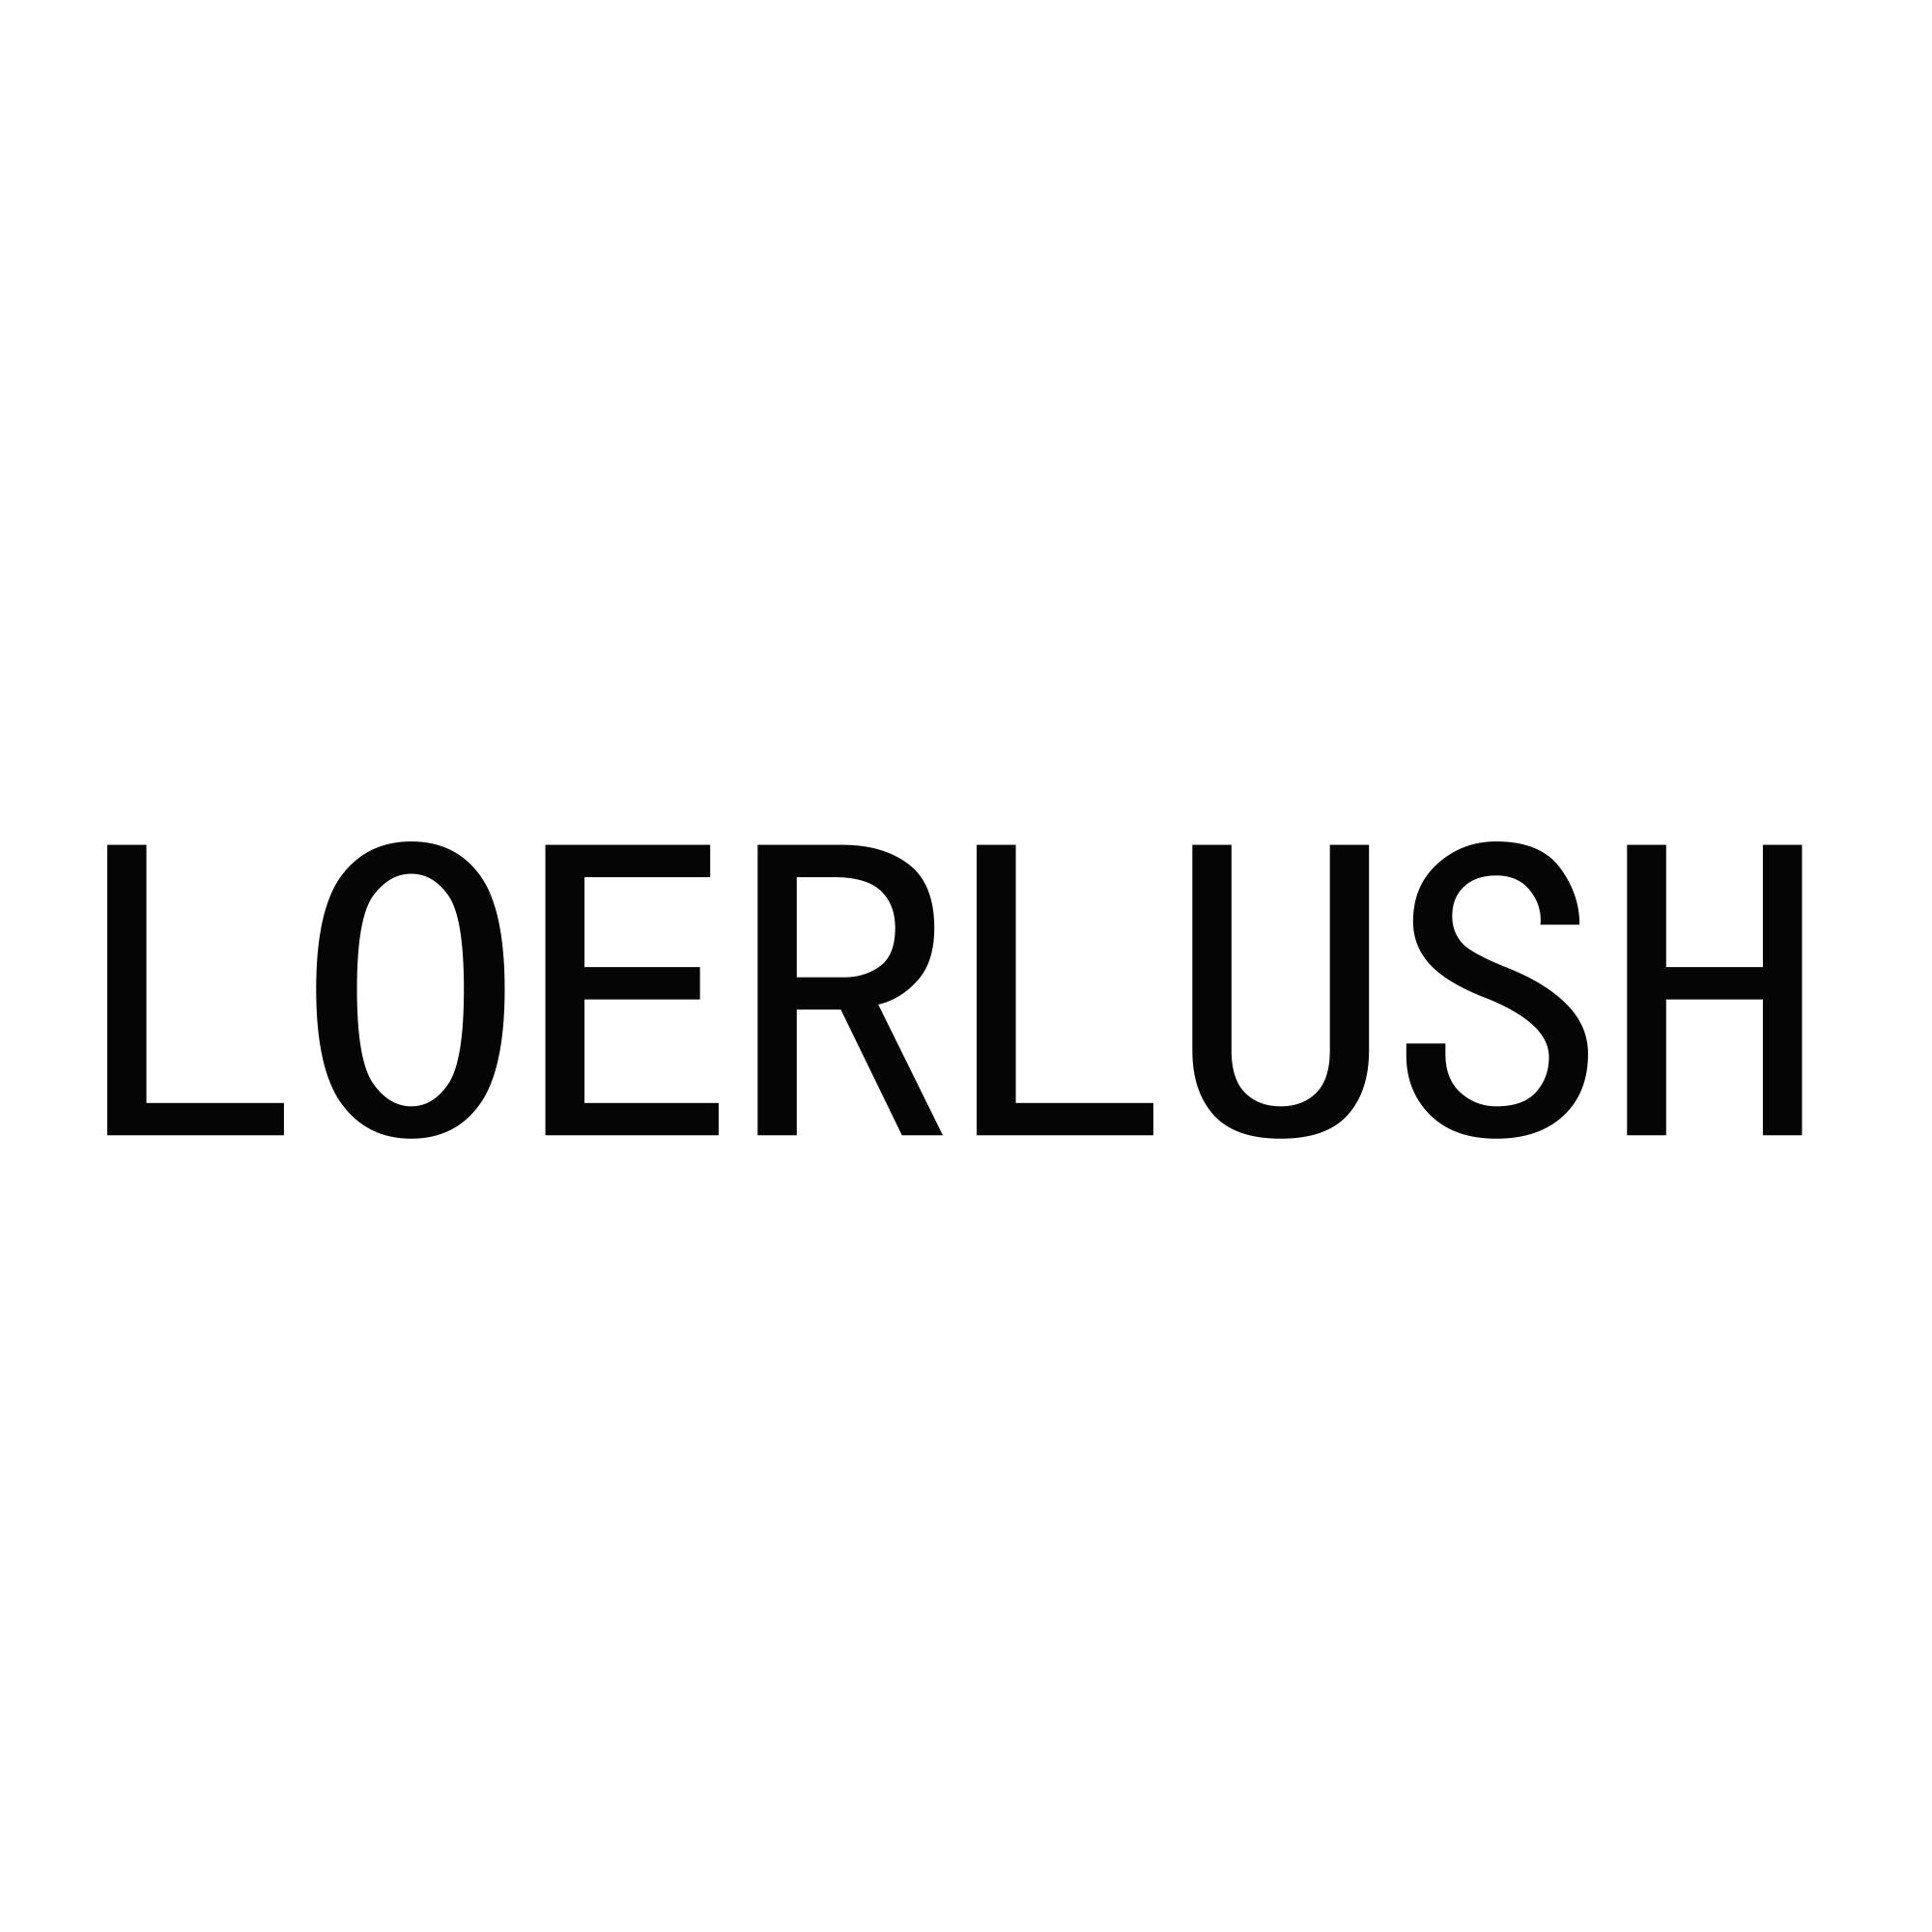 LOERLUSH